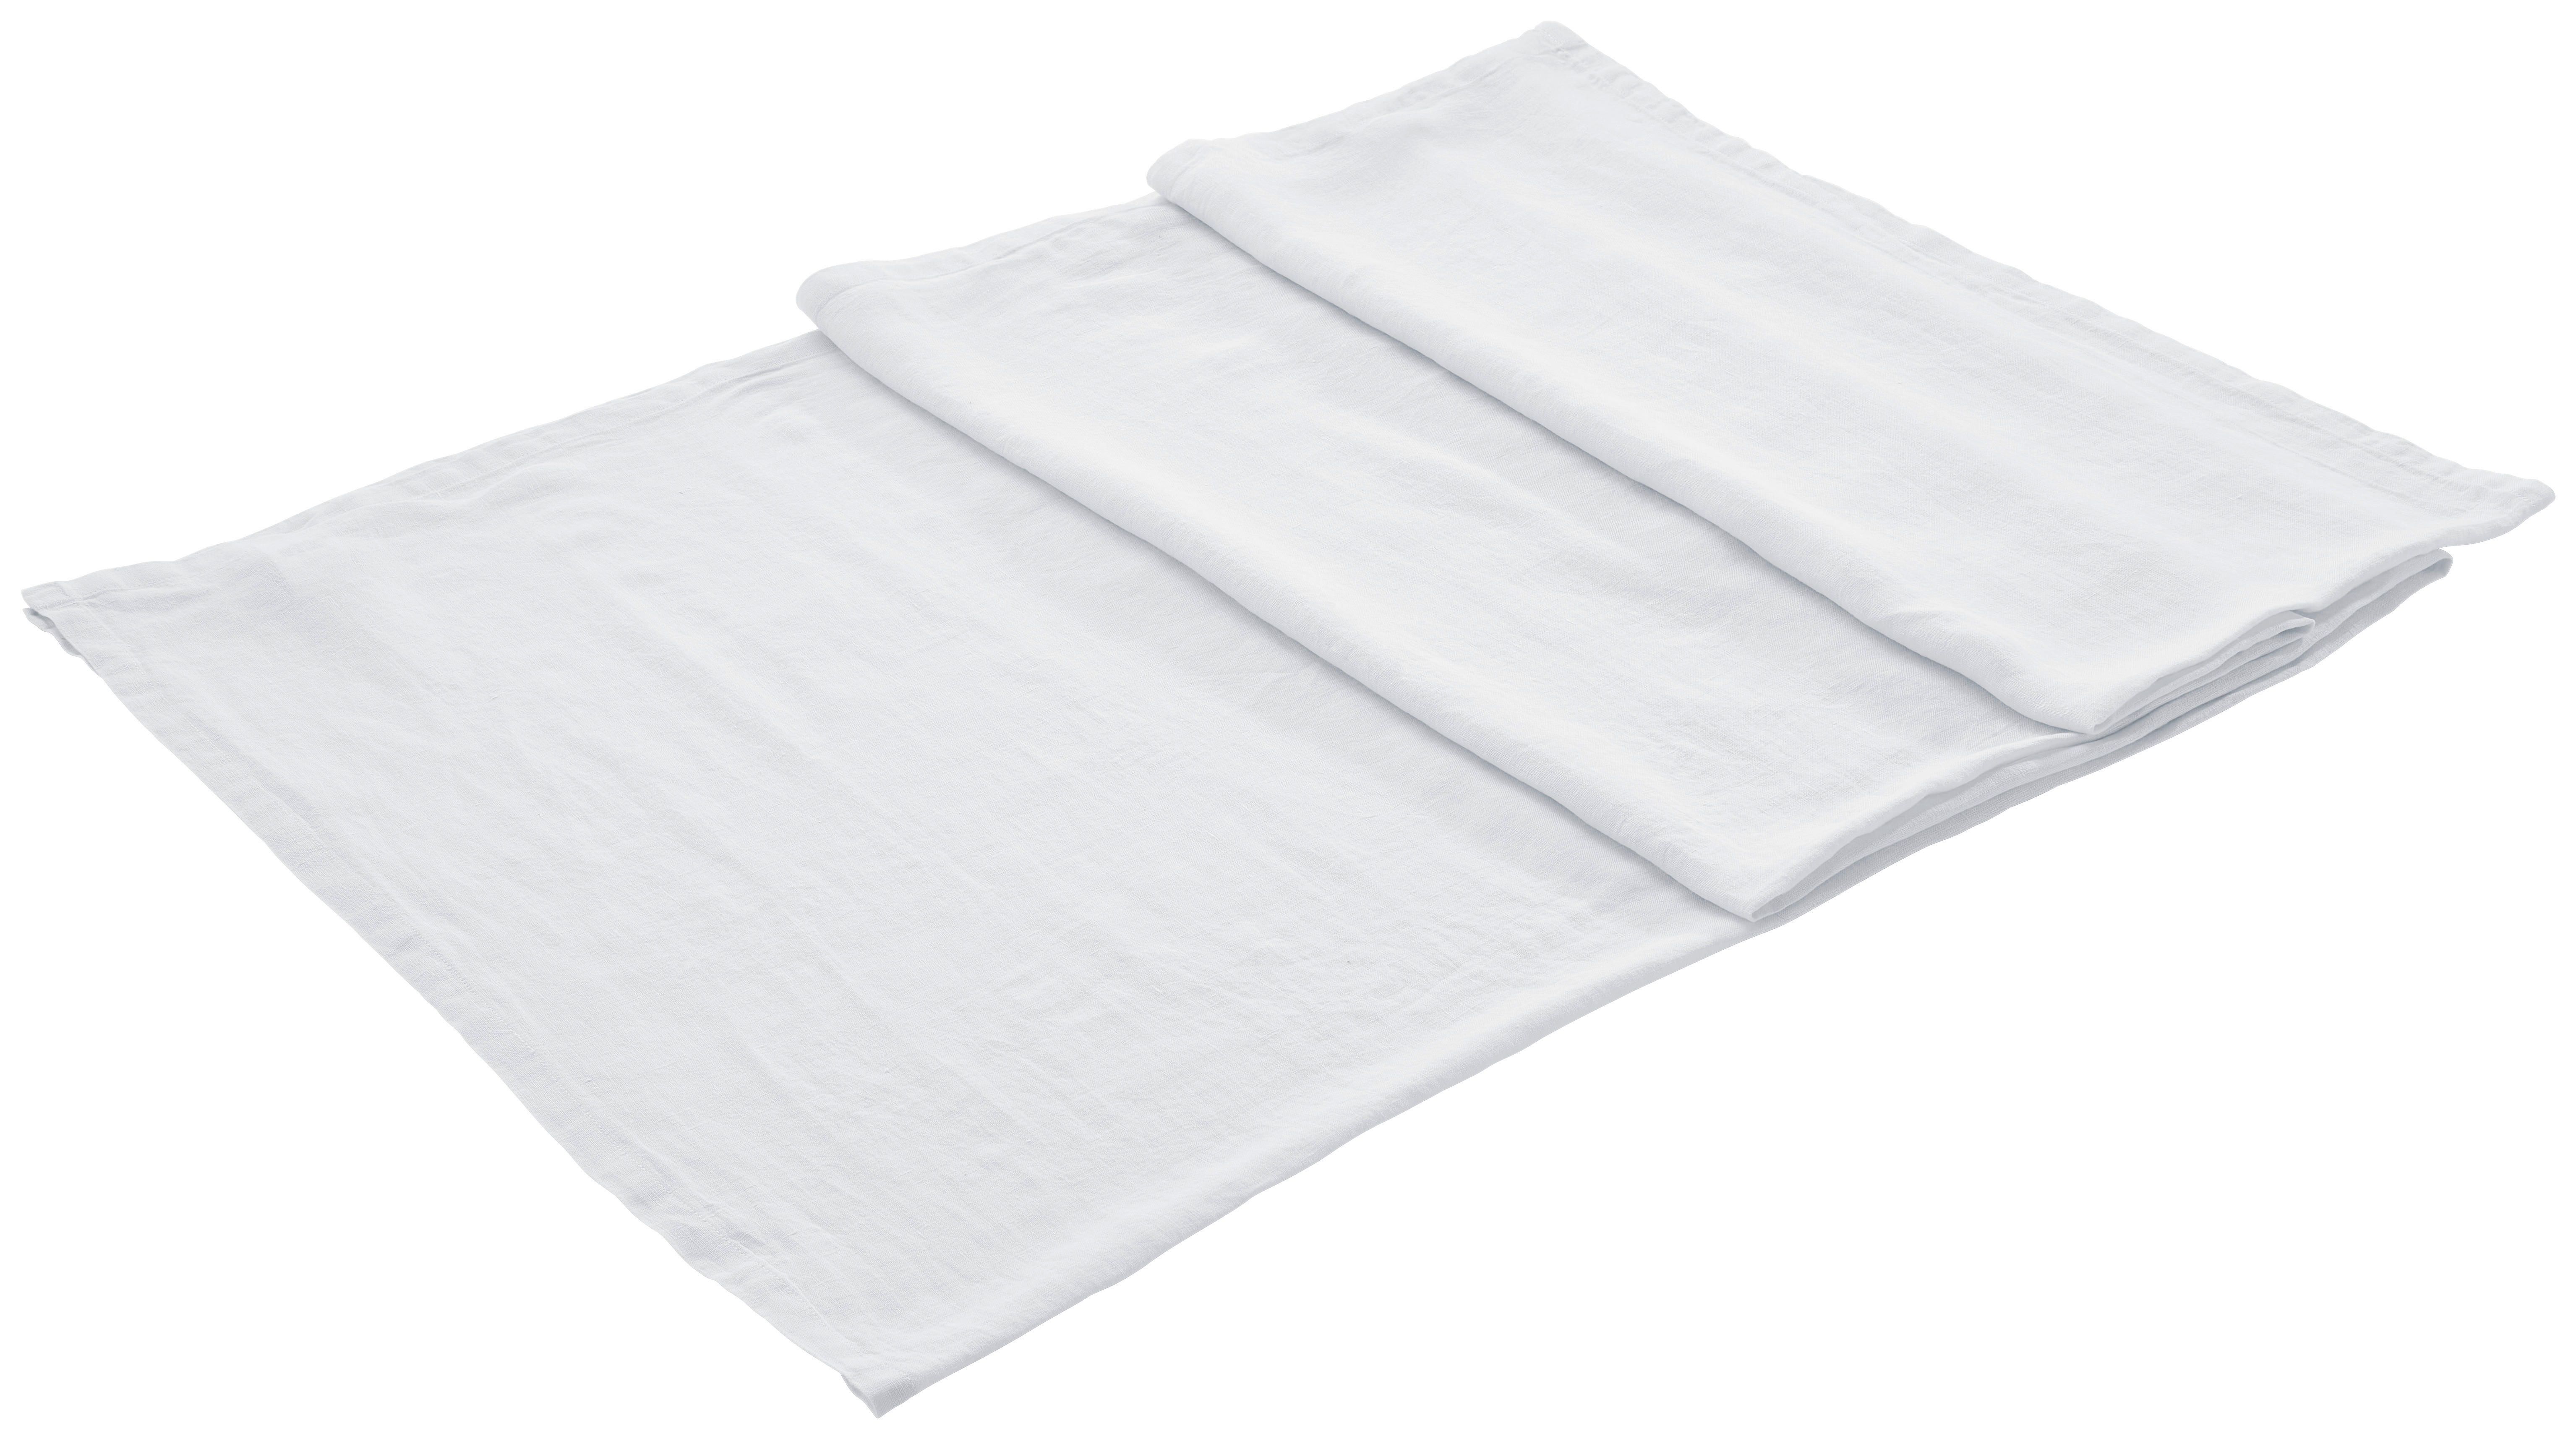 LEINEN-TISCHDECKE 140/240 cm  - Weiß, Trend, Textil (140/240cm) - Ambiente